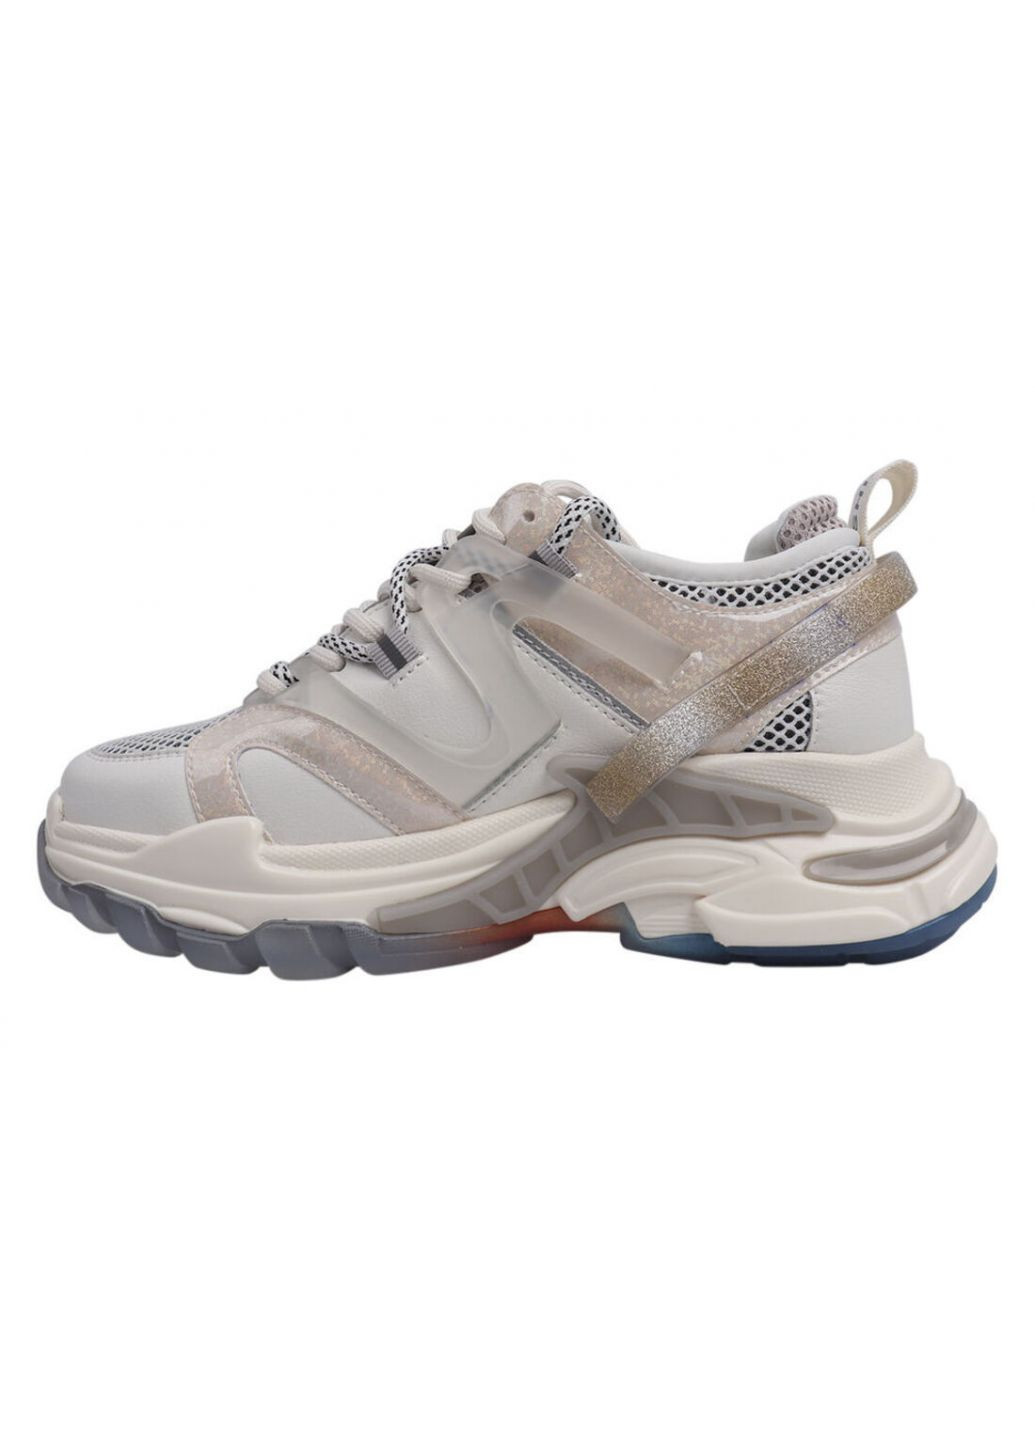 Білі кросівки жіночі з натуральної шкіри, на платформі, молочні, Lifexpert 576-21DK